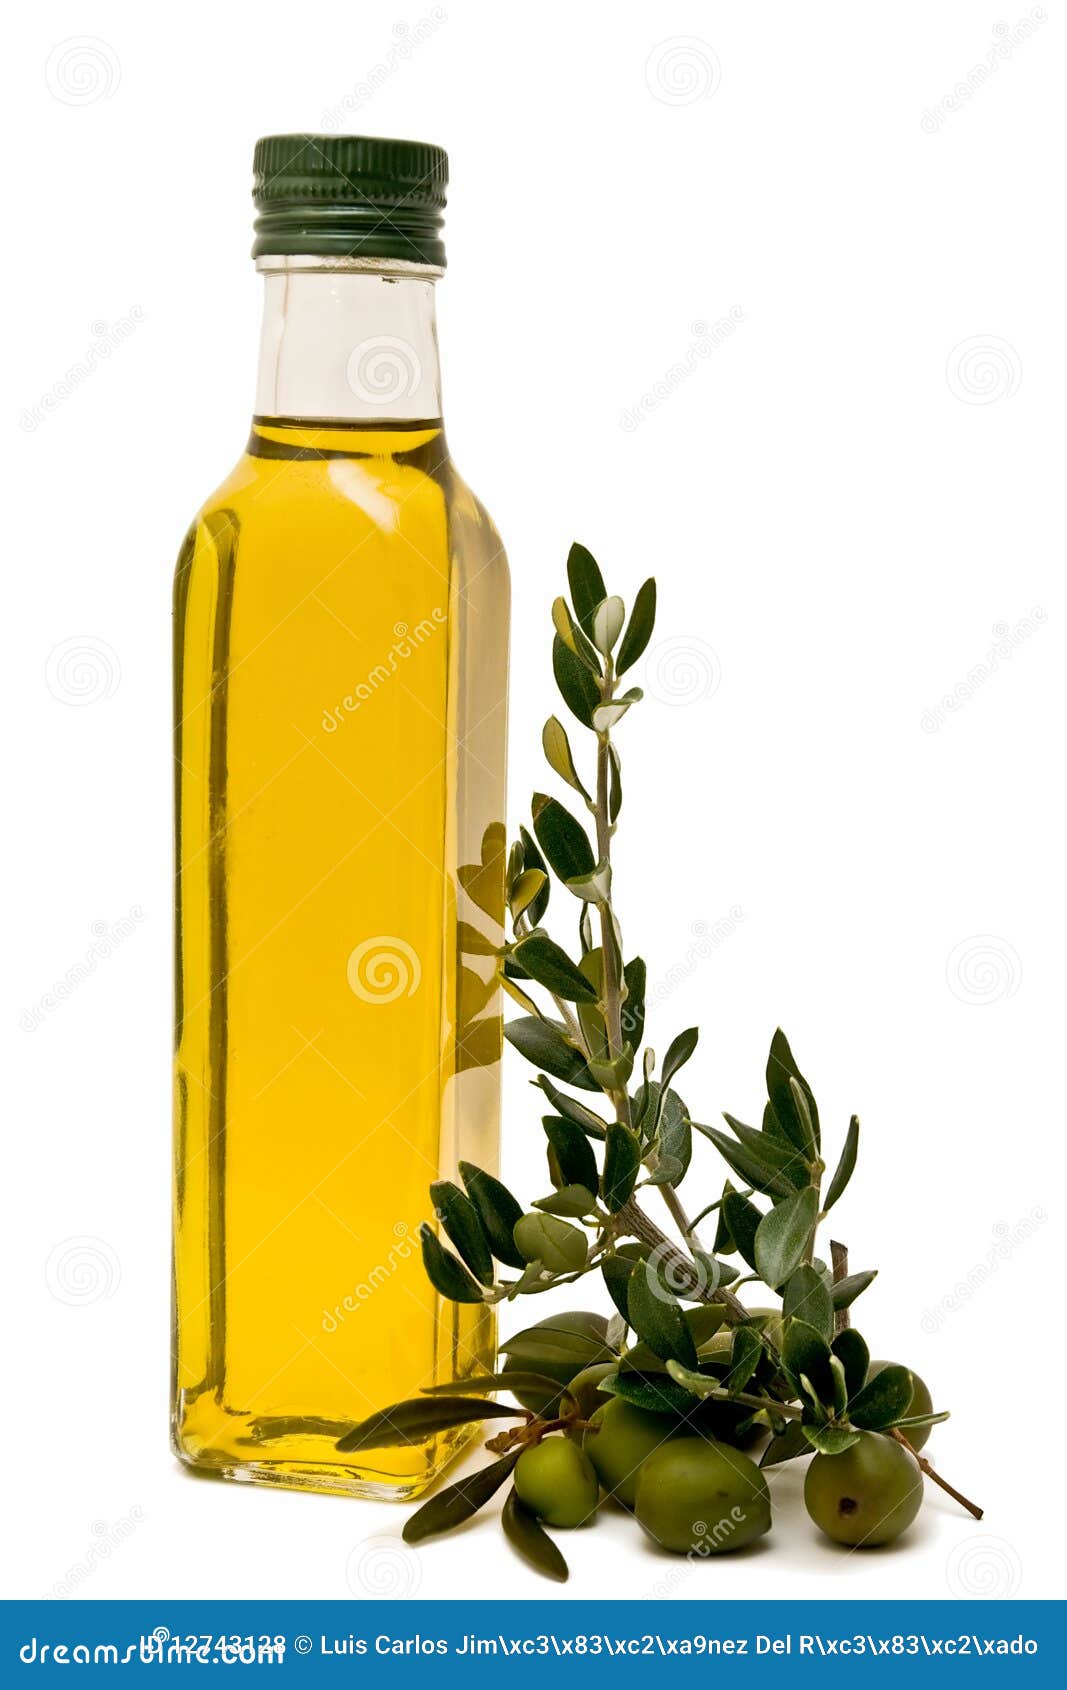 Bouteille huile d'olive : 116 469 images, photos de stock, objets 3D et  images vectorielles